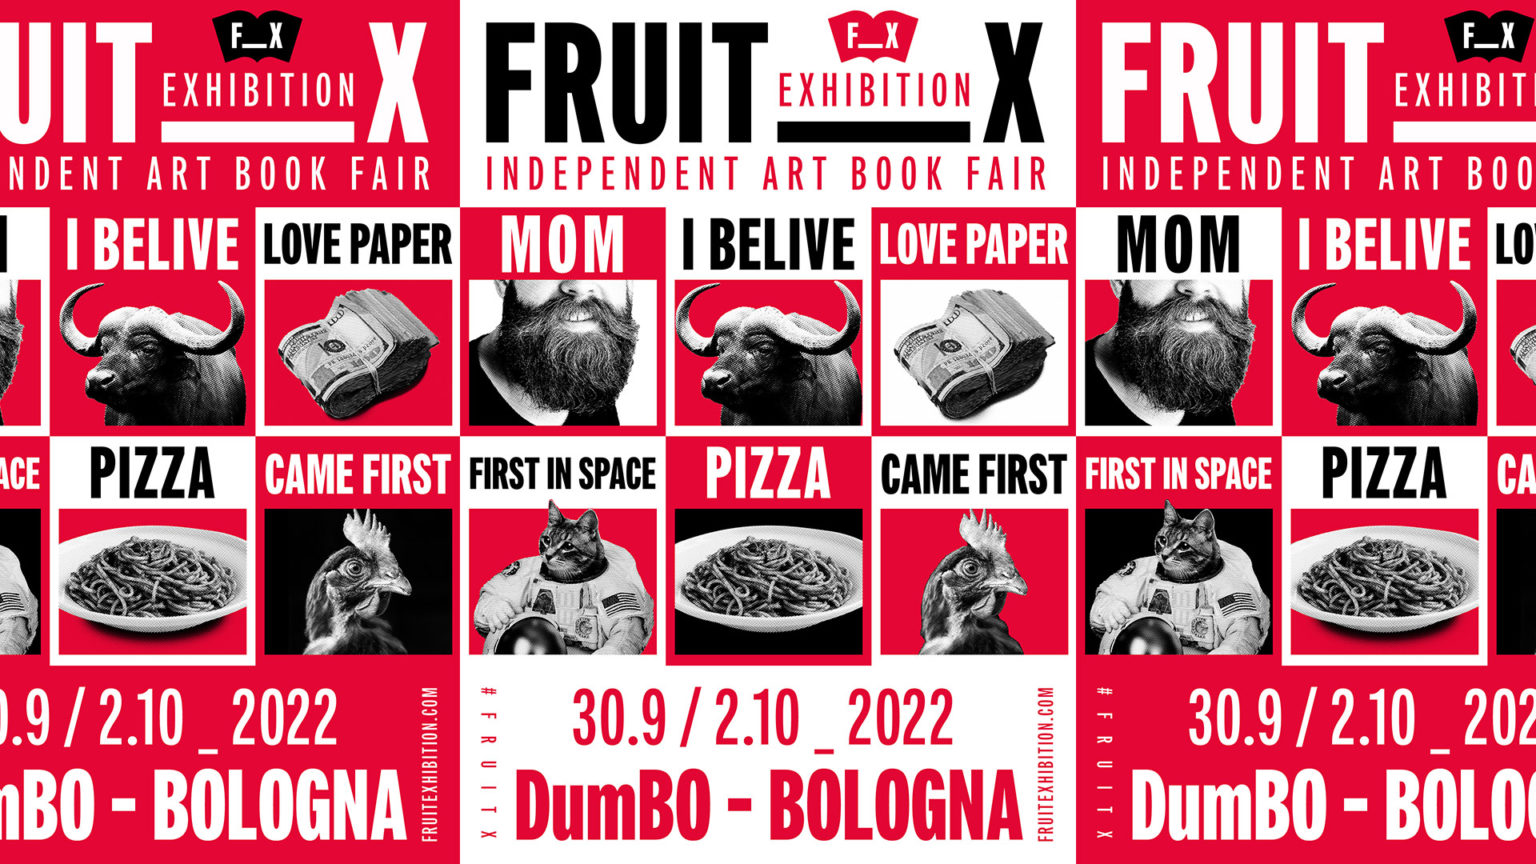 A Bologna l'edizione finale di Fruit Exhibition, la fiera dell'editoria d'arte indipendente